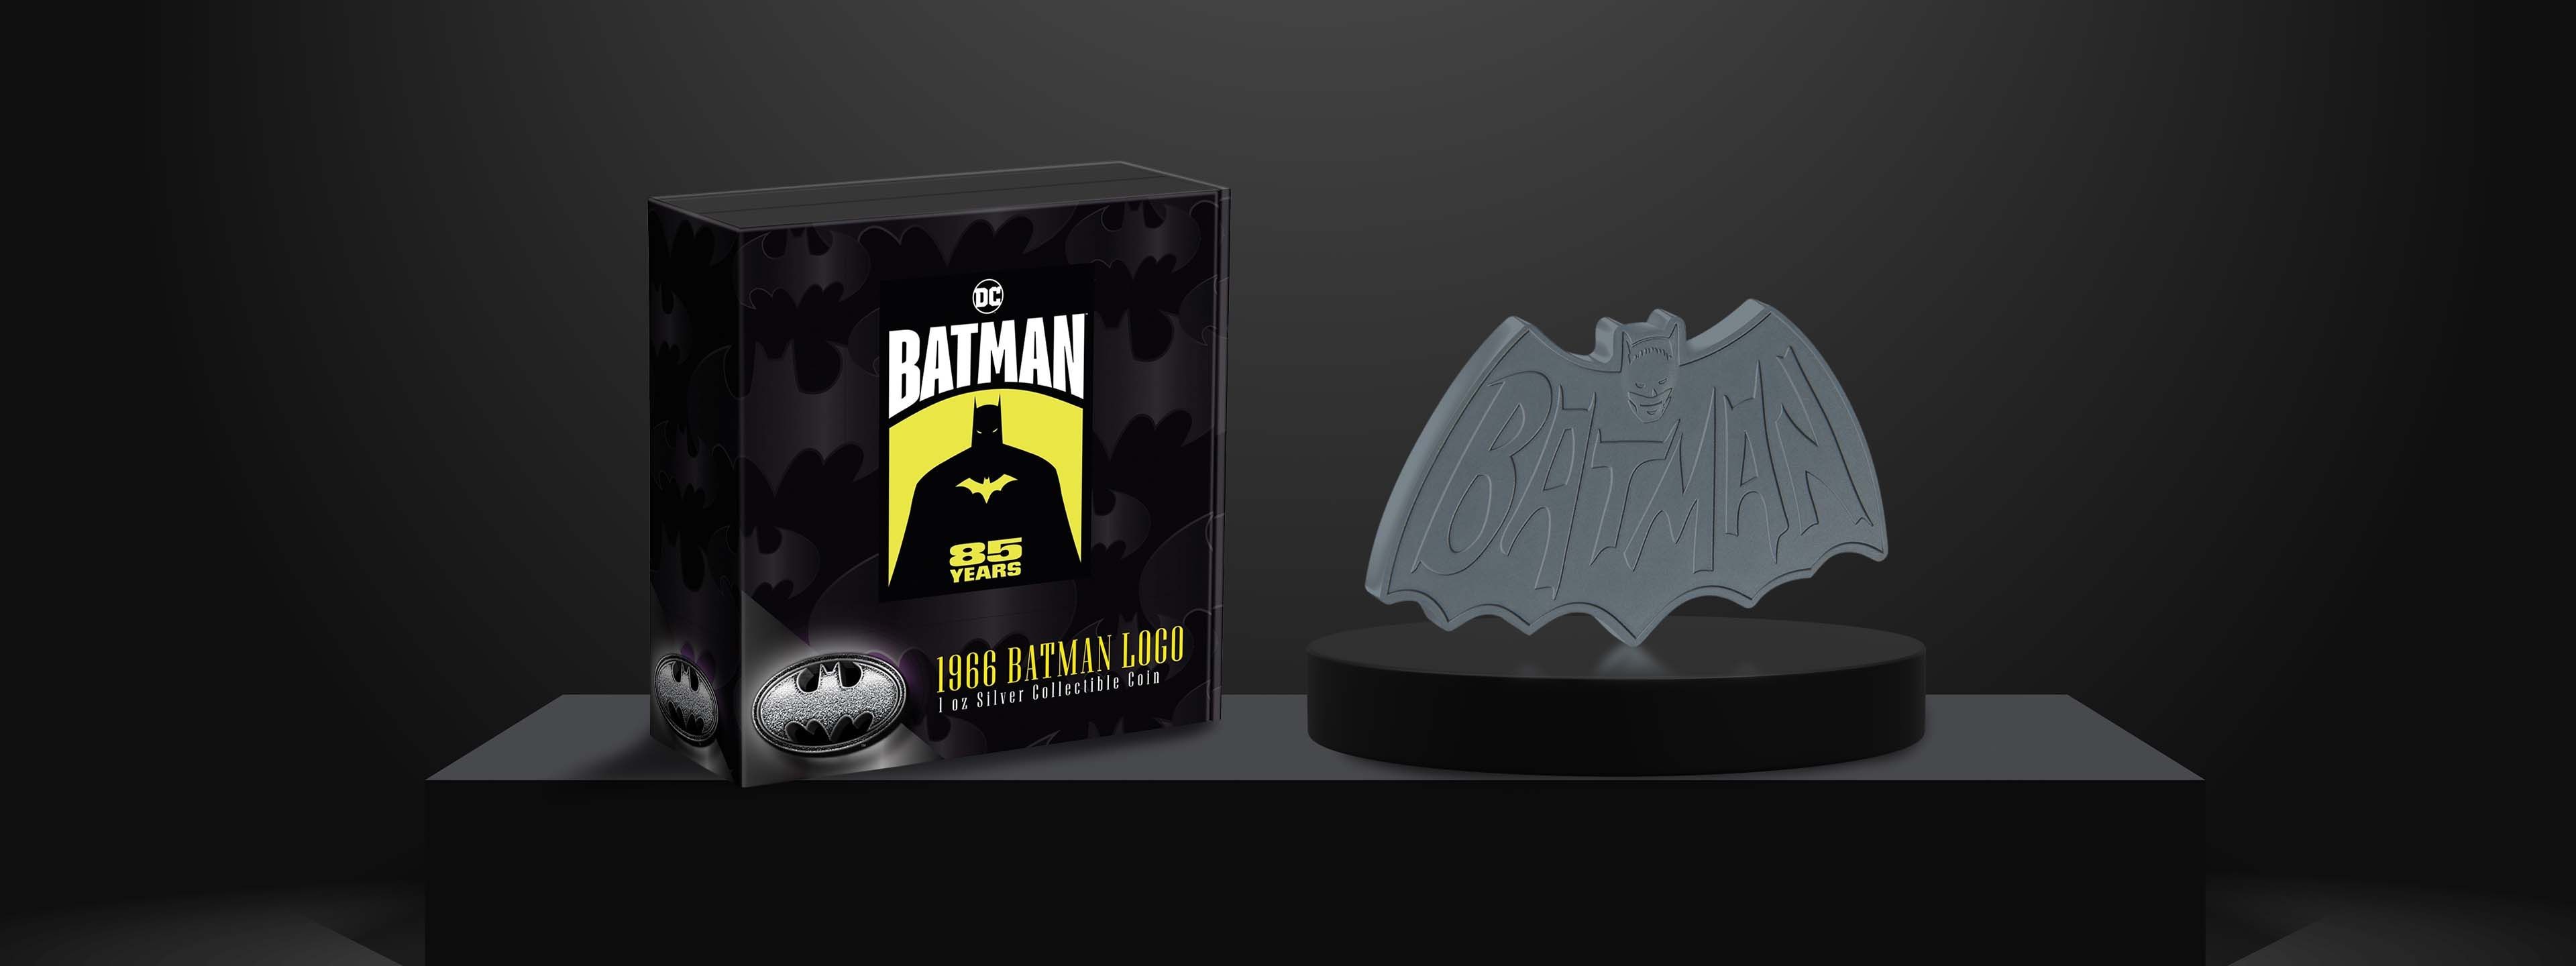 BATMAN 85 Years – 1966 Batman Logo 1oz Silver Collectible Coin